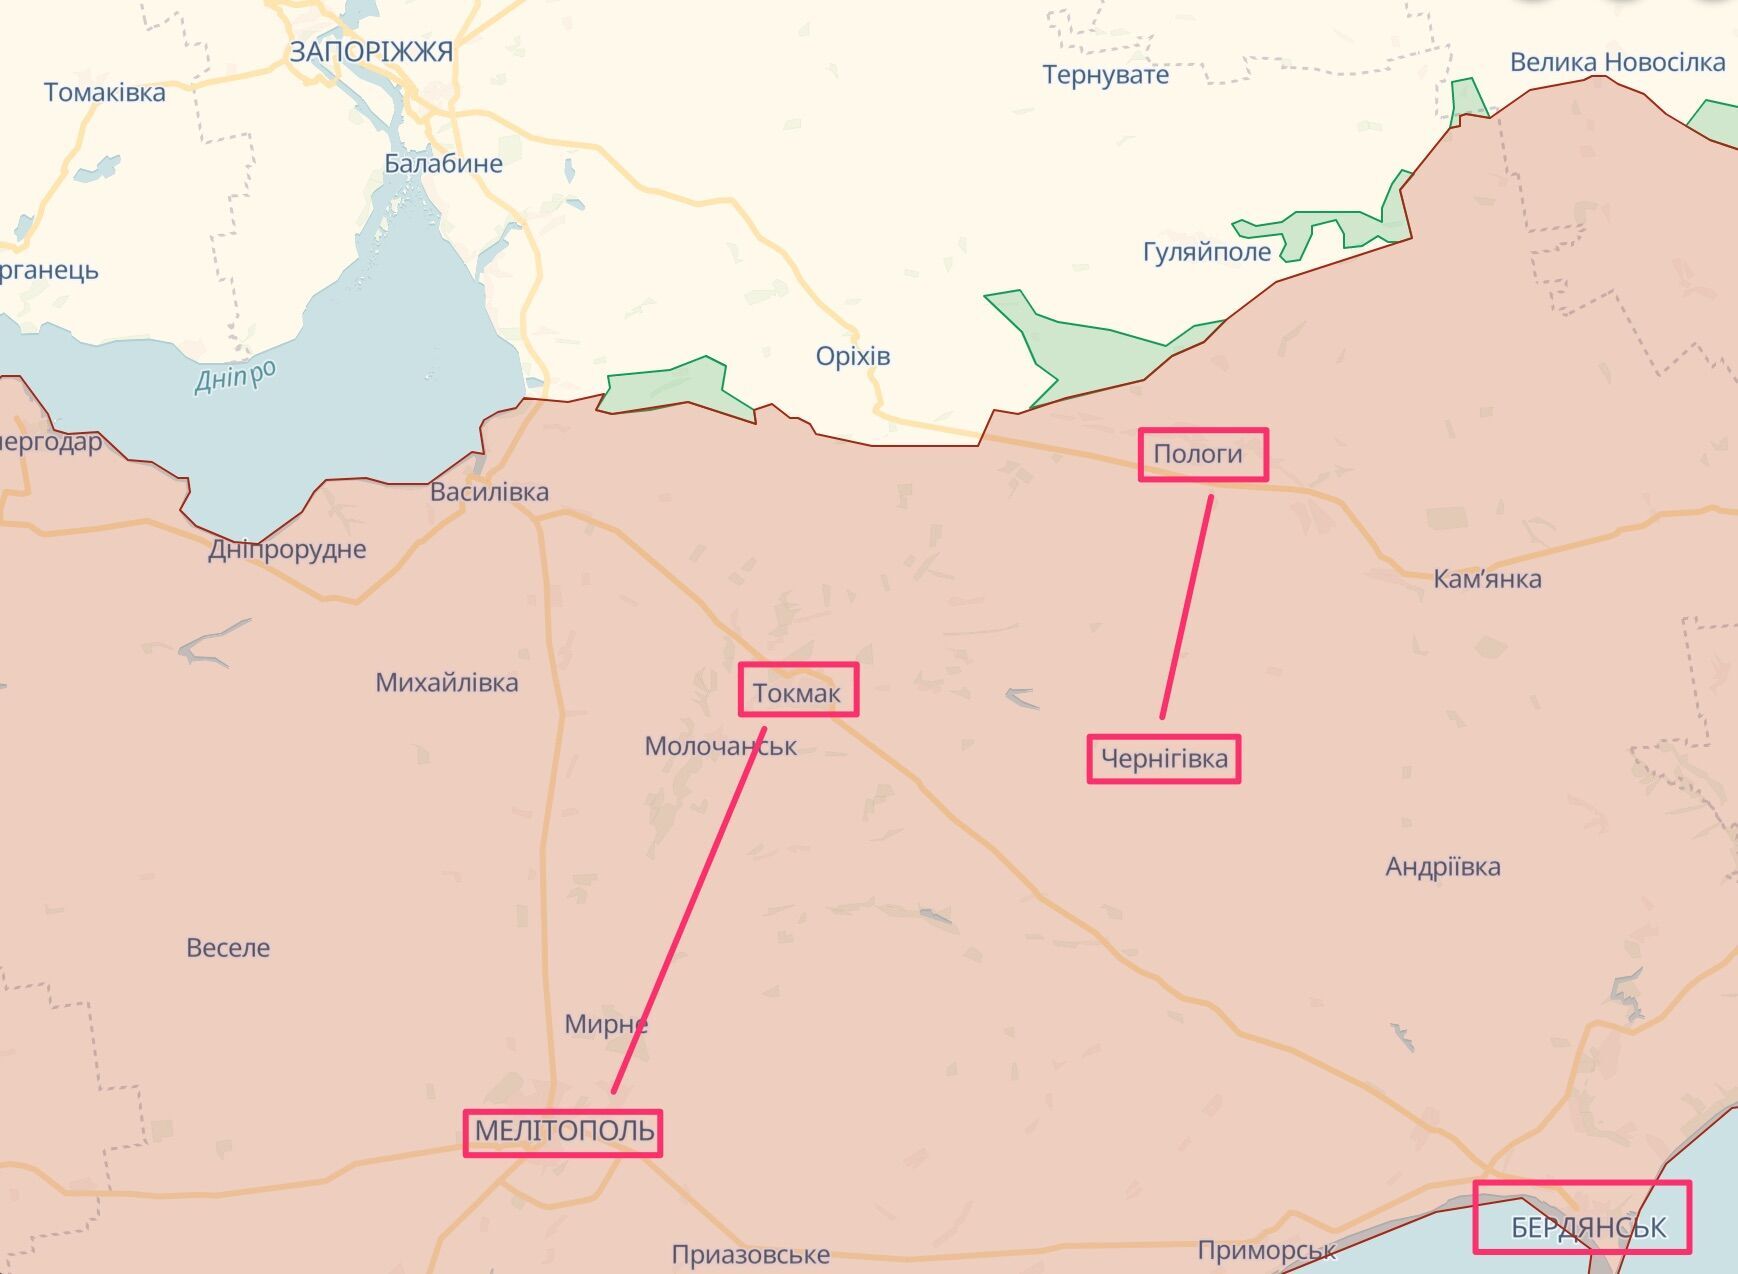 Россияне окапываются по линиям Пологи – Черниговка и Токмак – Мелитополь, а также вокруг Бердянска